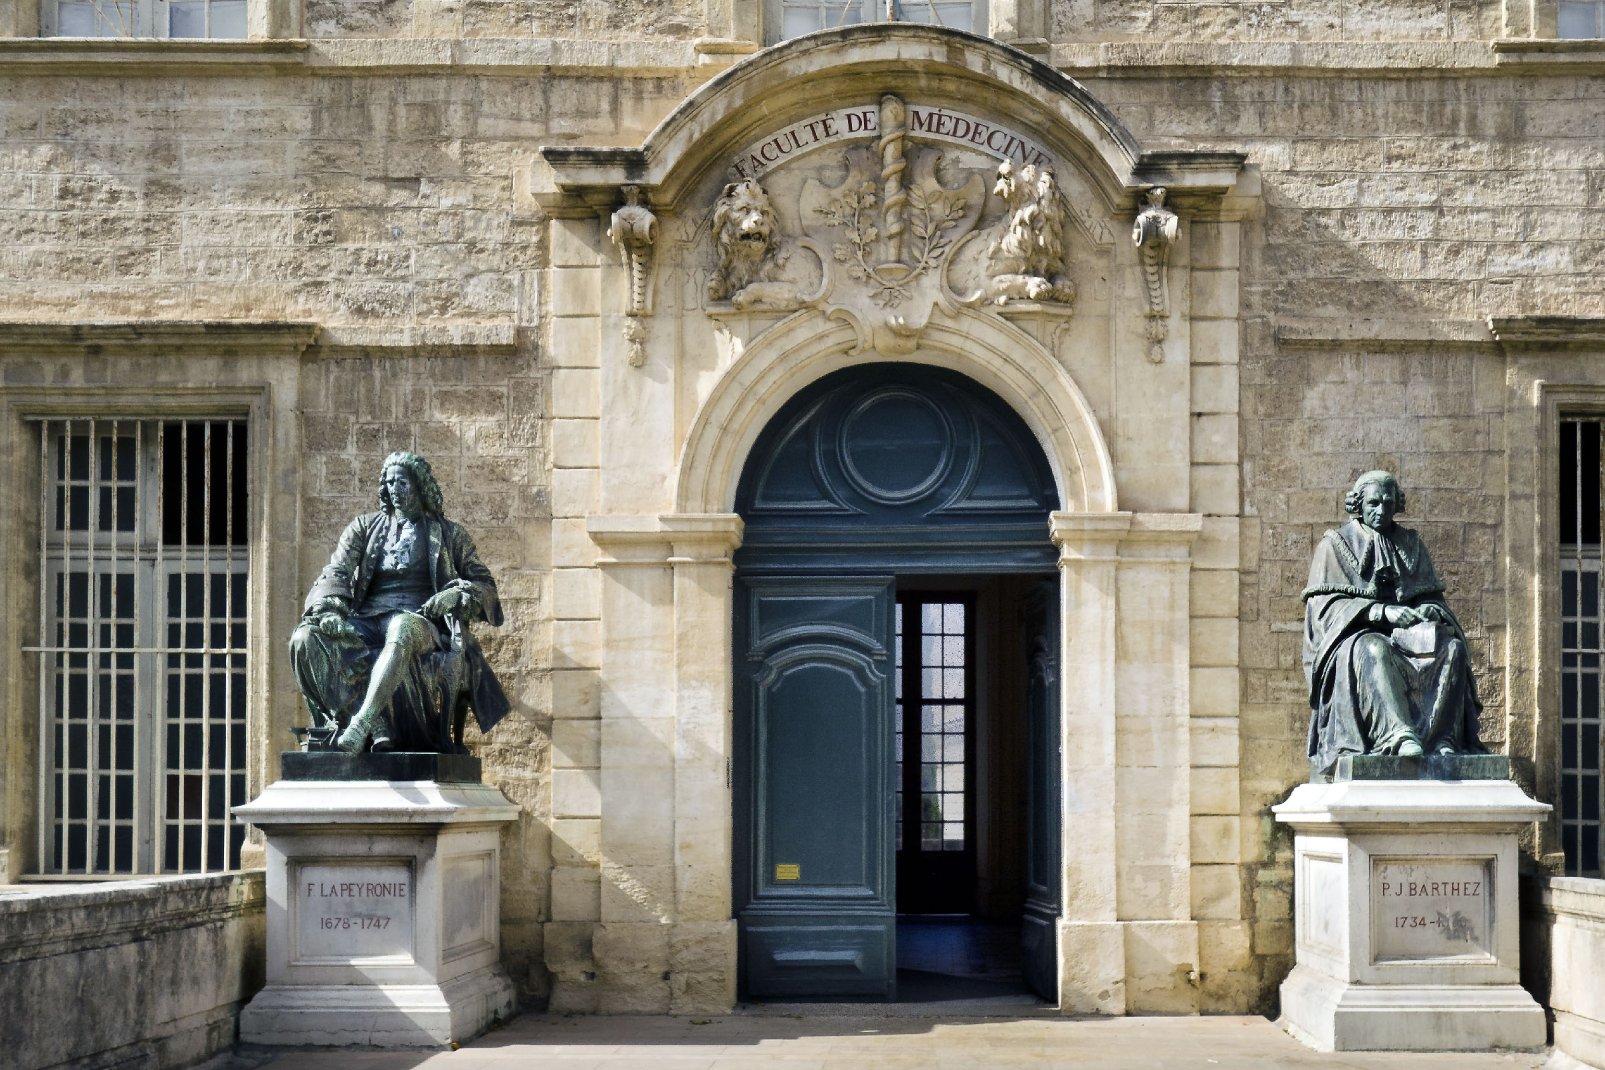 En plein centre de Montpellier, la faculté de médecine loge dans l'ancien monastère Saint-Germain-Saint-Benoît, qui devient ensuite un palais épiscopal. C'est un lieu hors du commun pour étudier la médecine. L'entrée est gardée depuis 1864 par deux statues, celles de Lapeyronie et de Barthez.